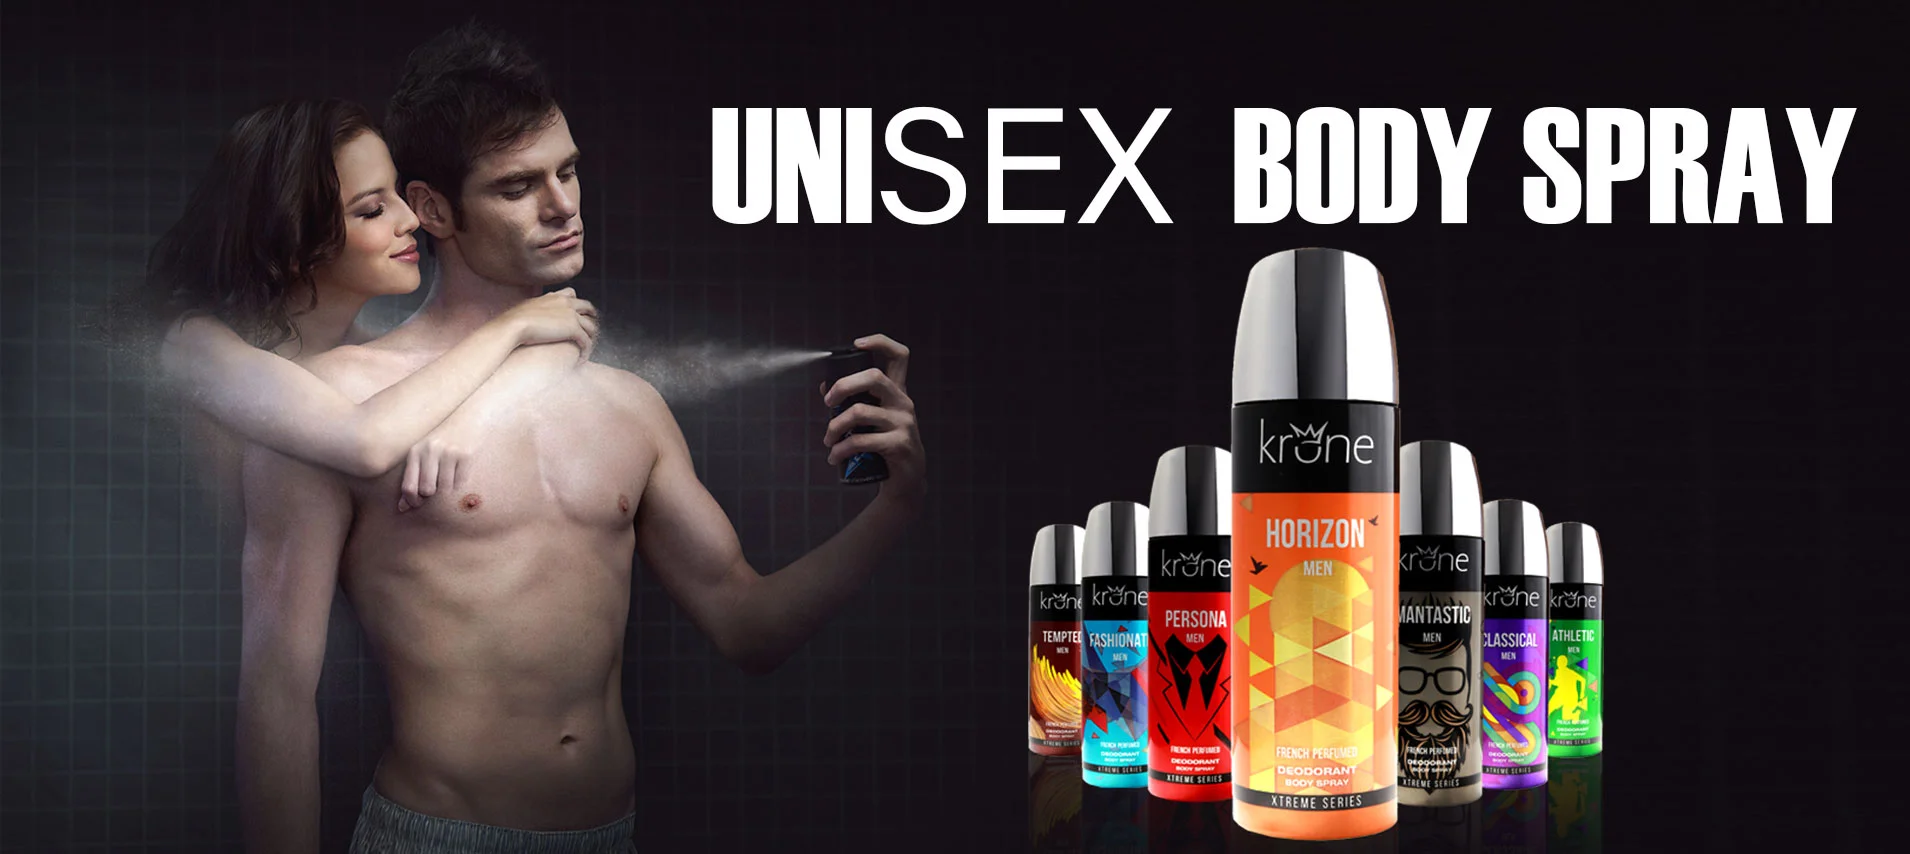 Unisex Body Spray Online